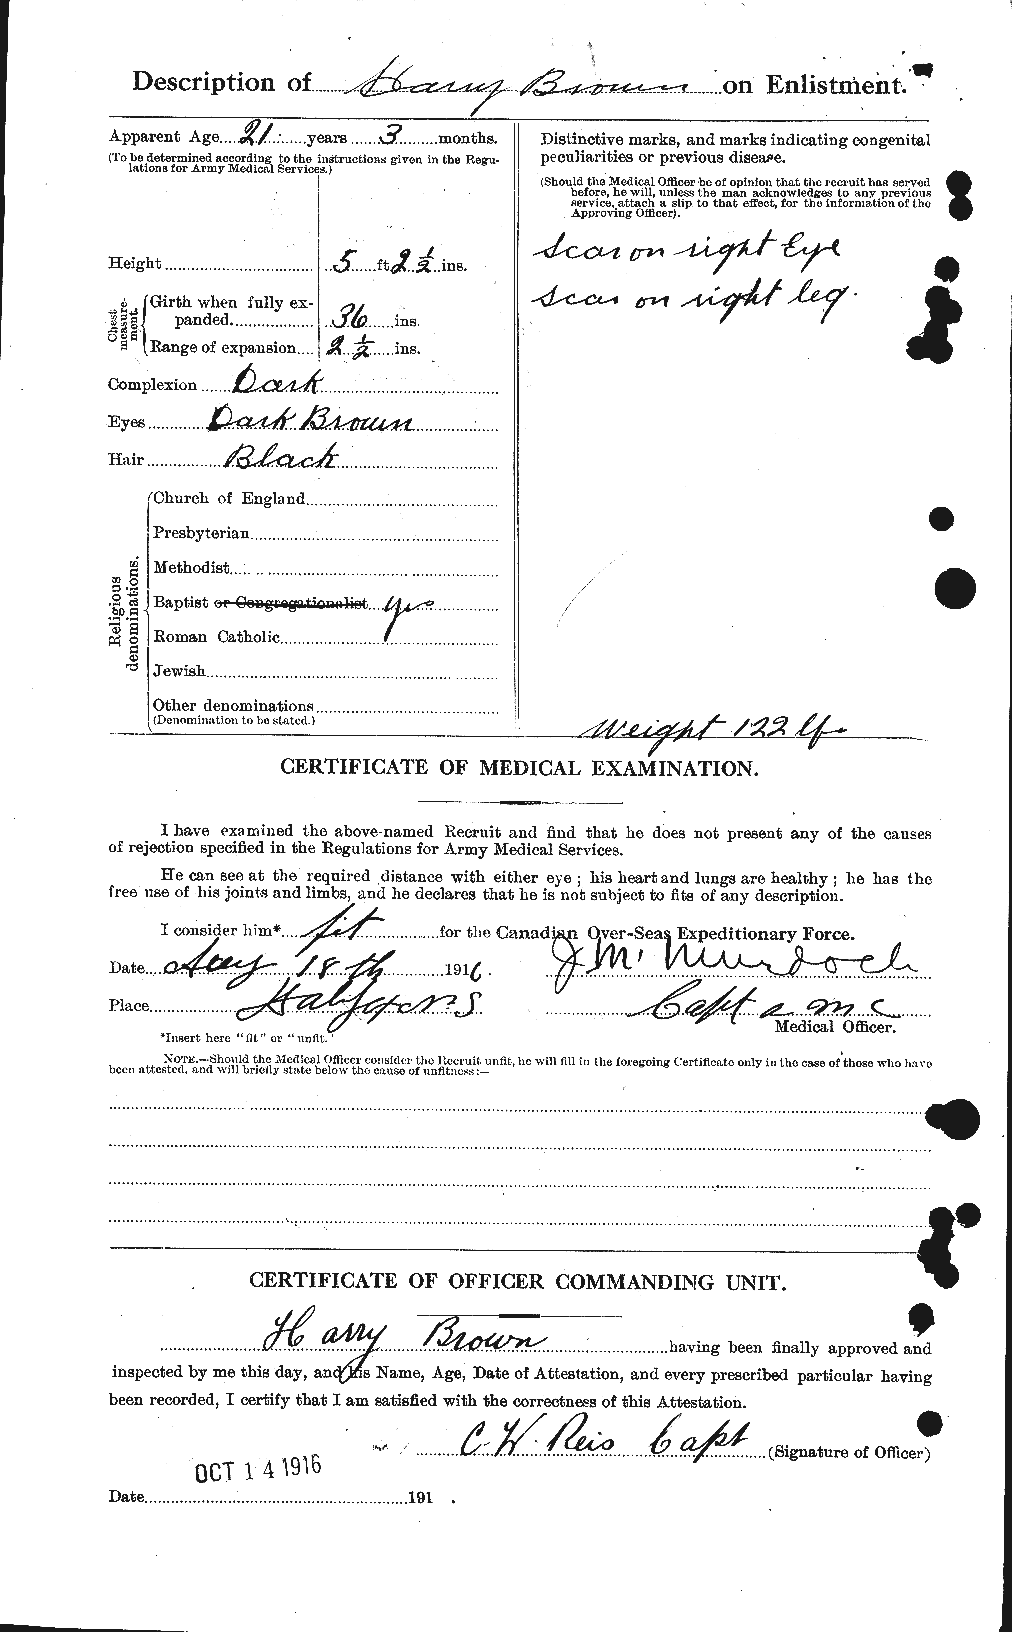 Dossiers du Personnel de la Première Guerre mondiale - CEC 266743b